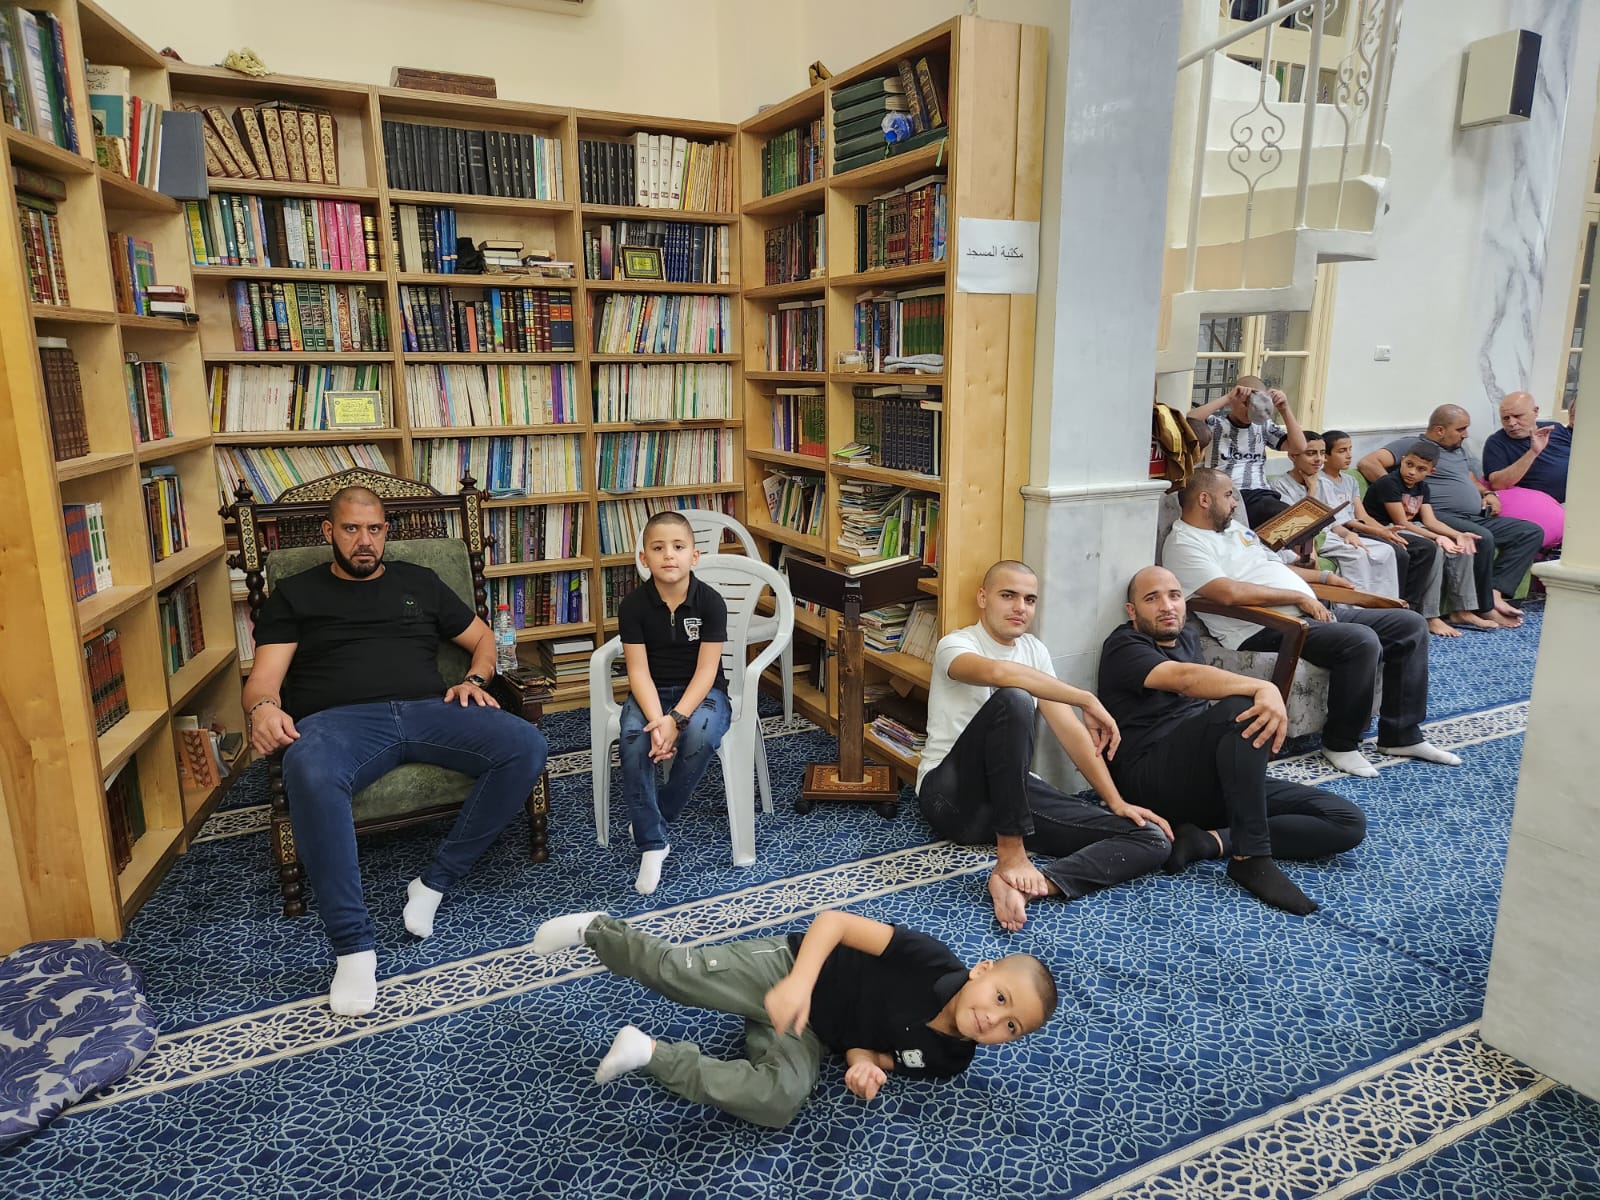 يافا: بالصور الأمسية الإيمانية الأسبوعية في مسجد النزهة 